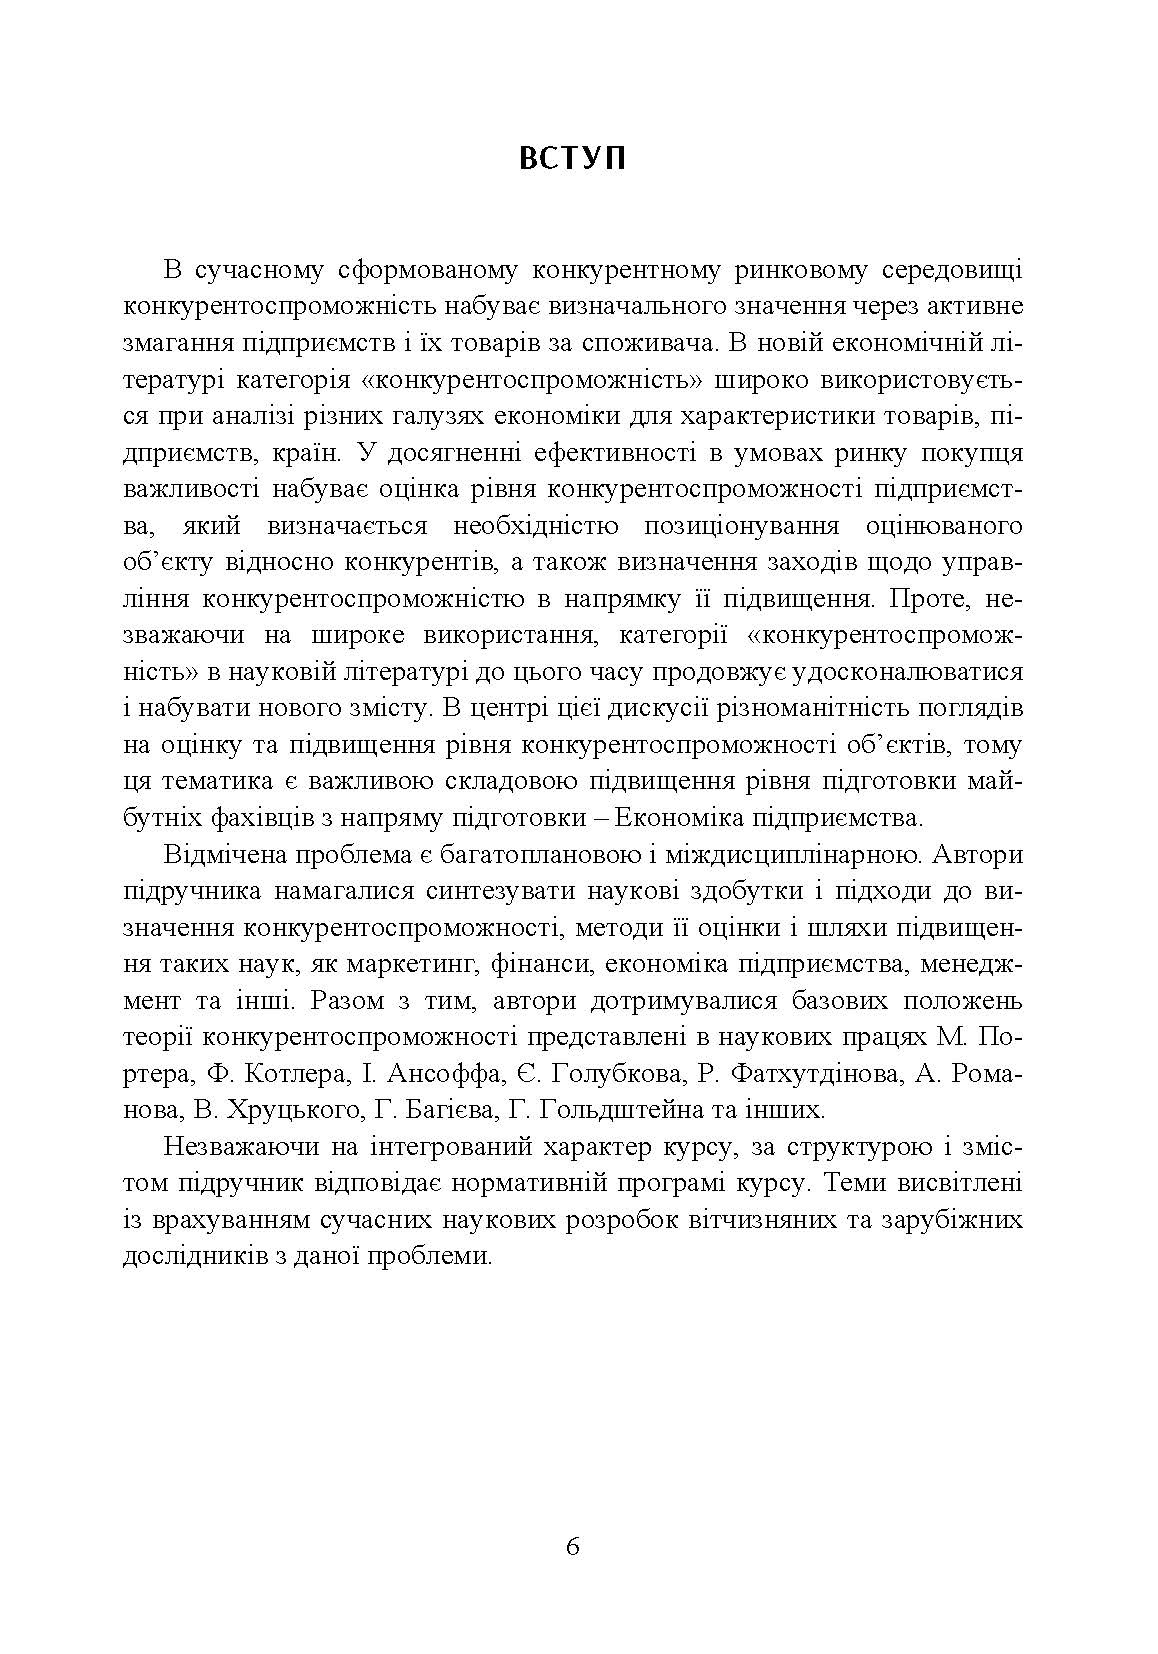 Учебная литература. Автор — П. І. Юхименко та ін. 